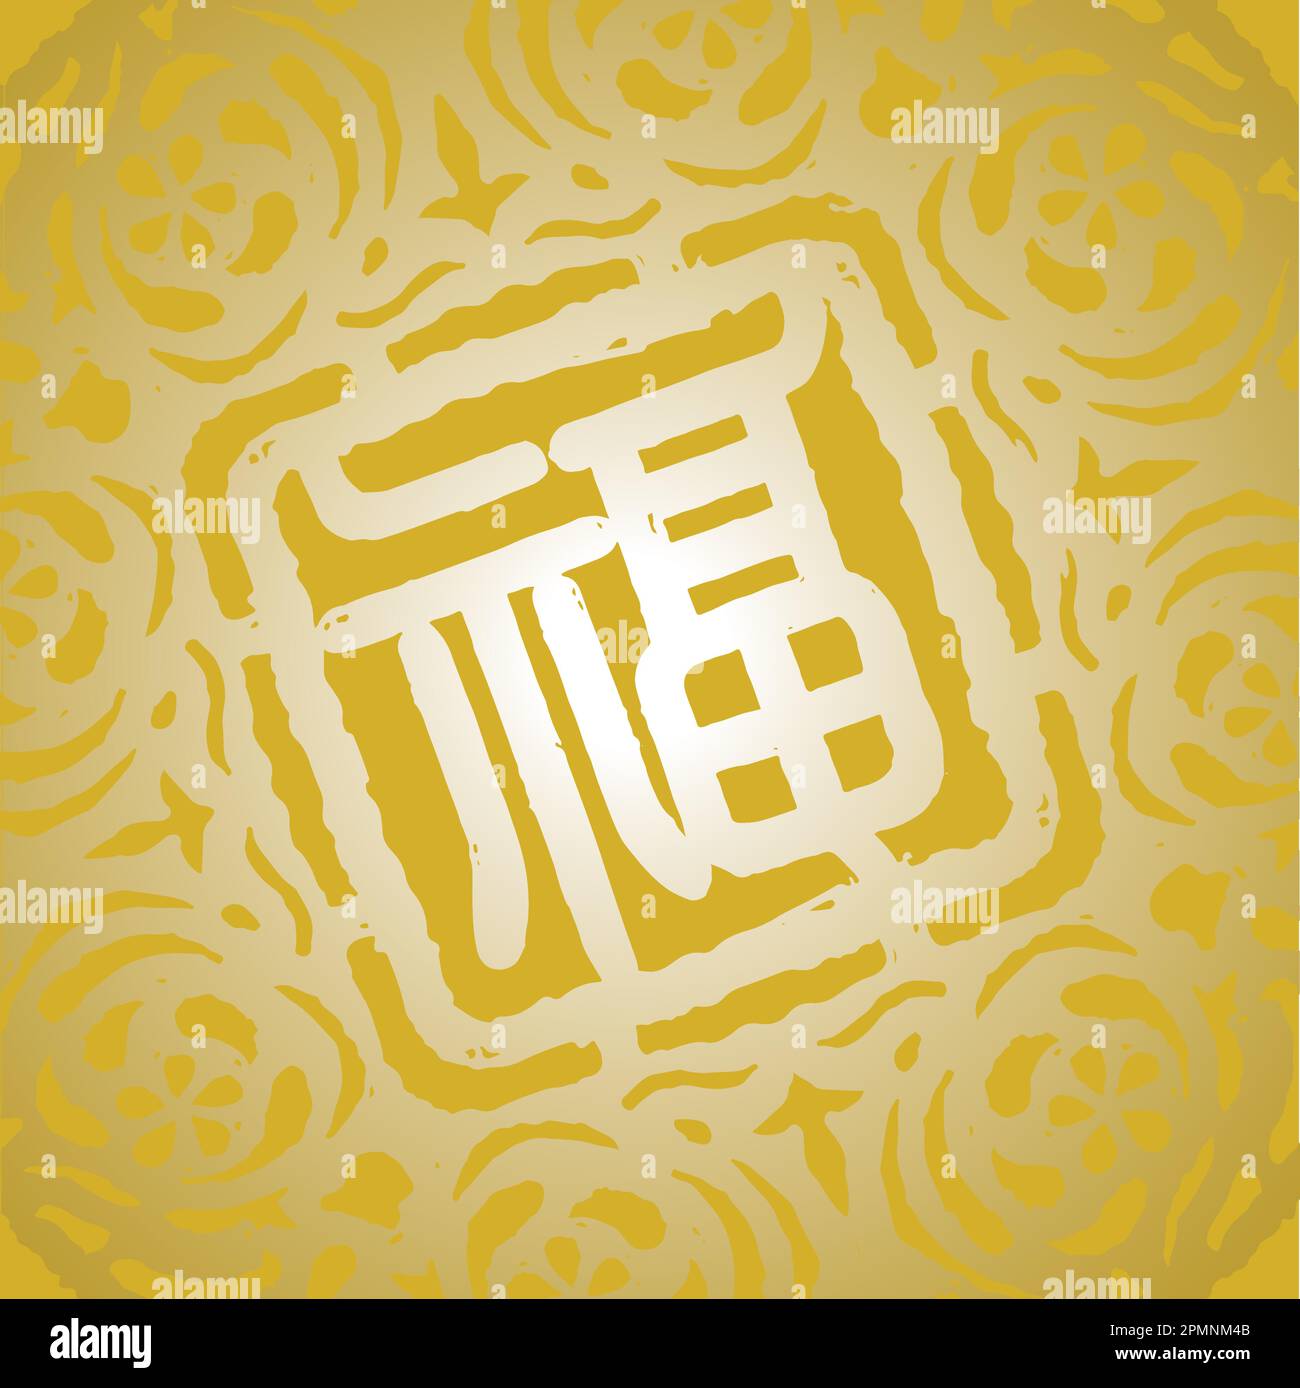 Motifs chinois traditionnels avec texte de bénédiction comme éléments de conception. Traduction: Bénédiction, bonne fortune Illustration de Vecteur